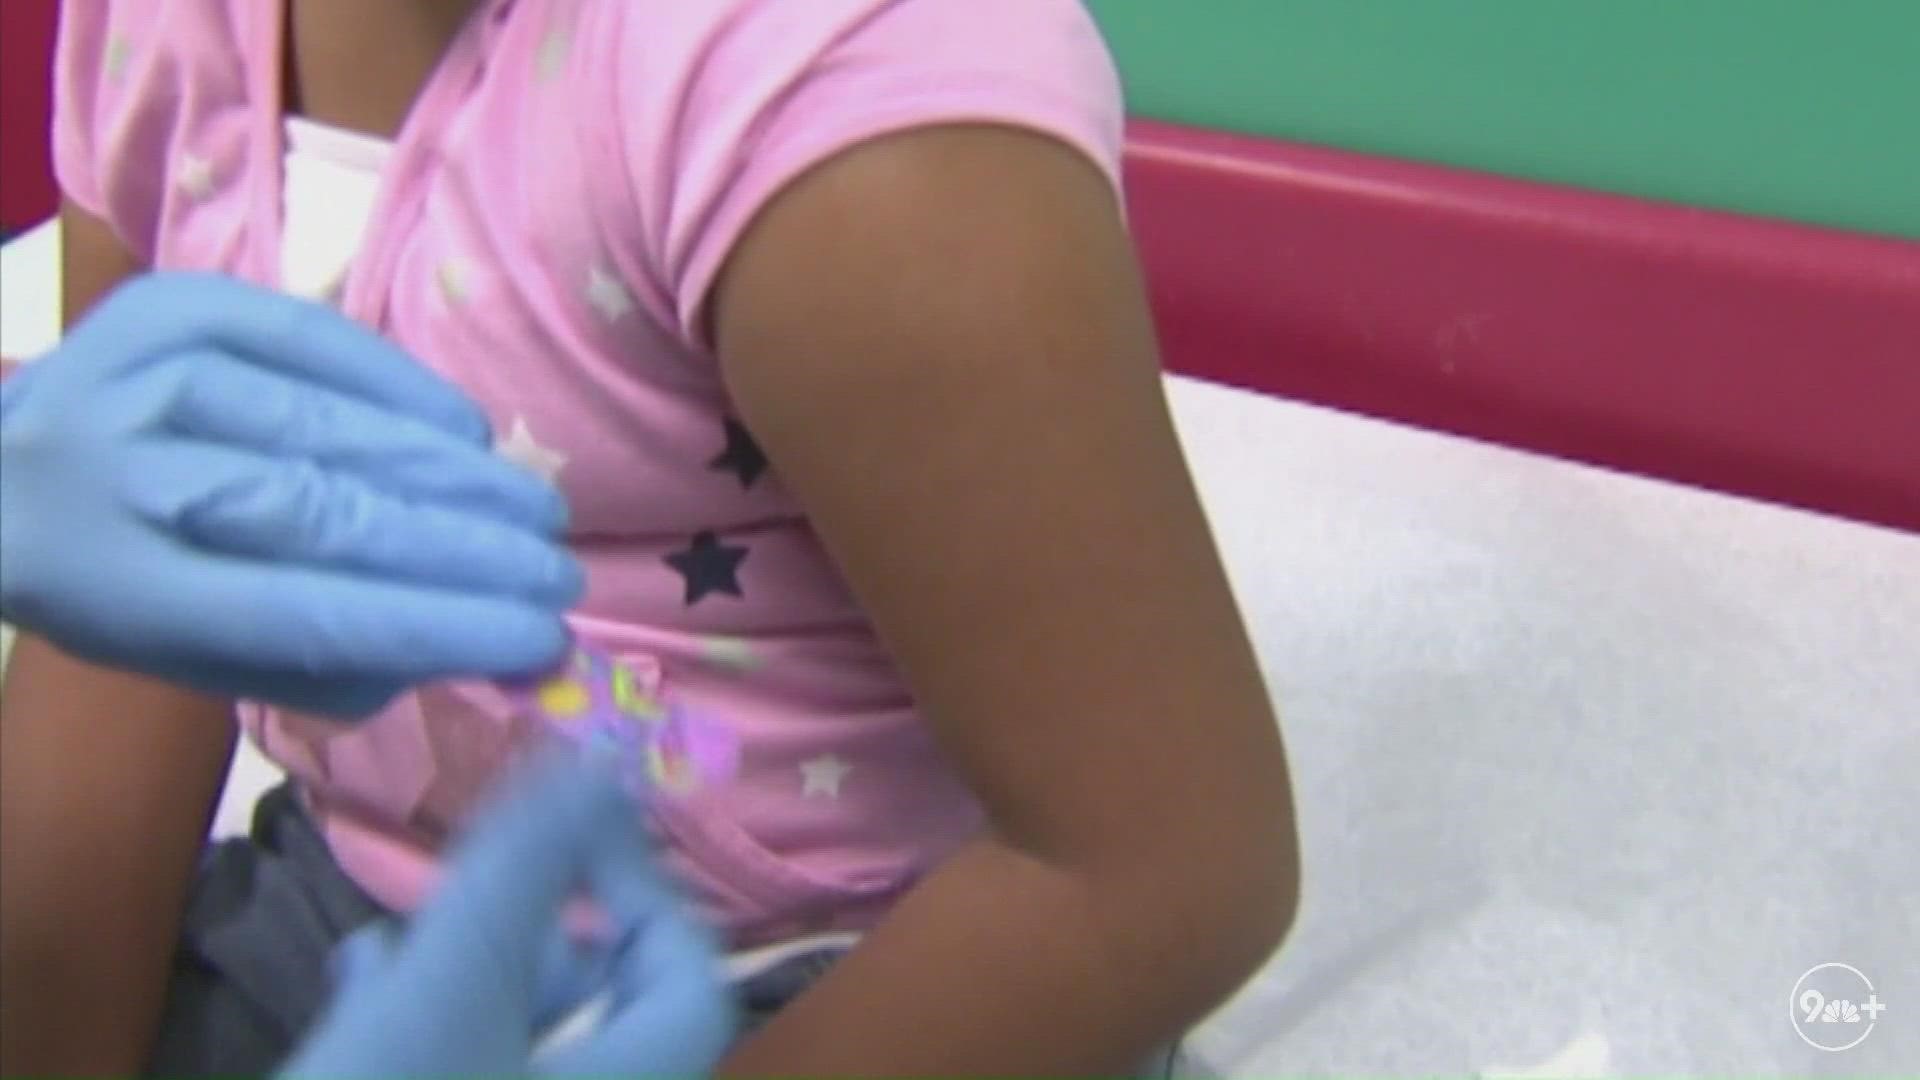 Colorado ha recibido las vacunas para niños menores de 5 años. Según Vanessa Bernal de CDPHE, las vacunas comenzarán a administrarse a partir de esta semana.